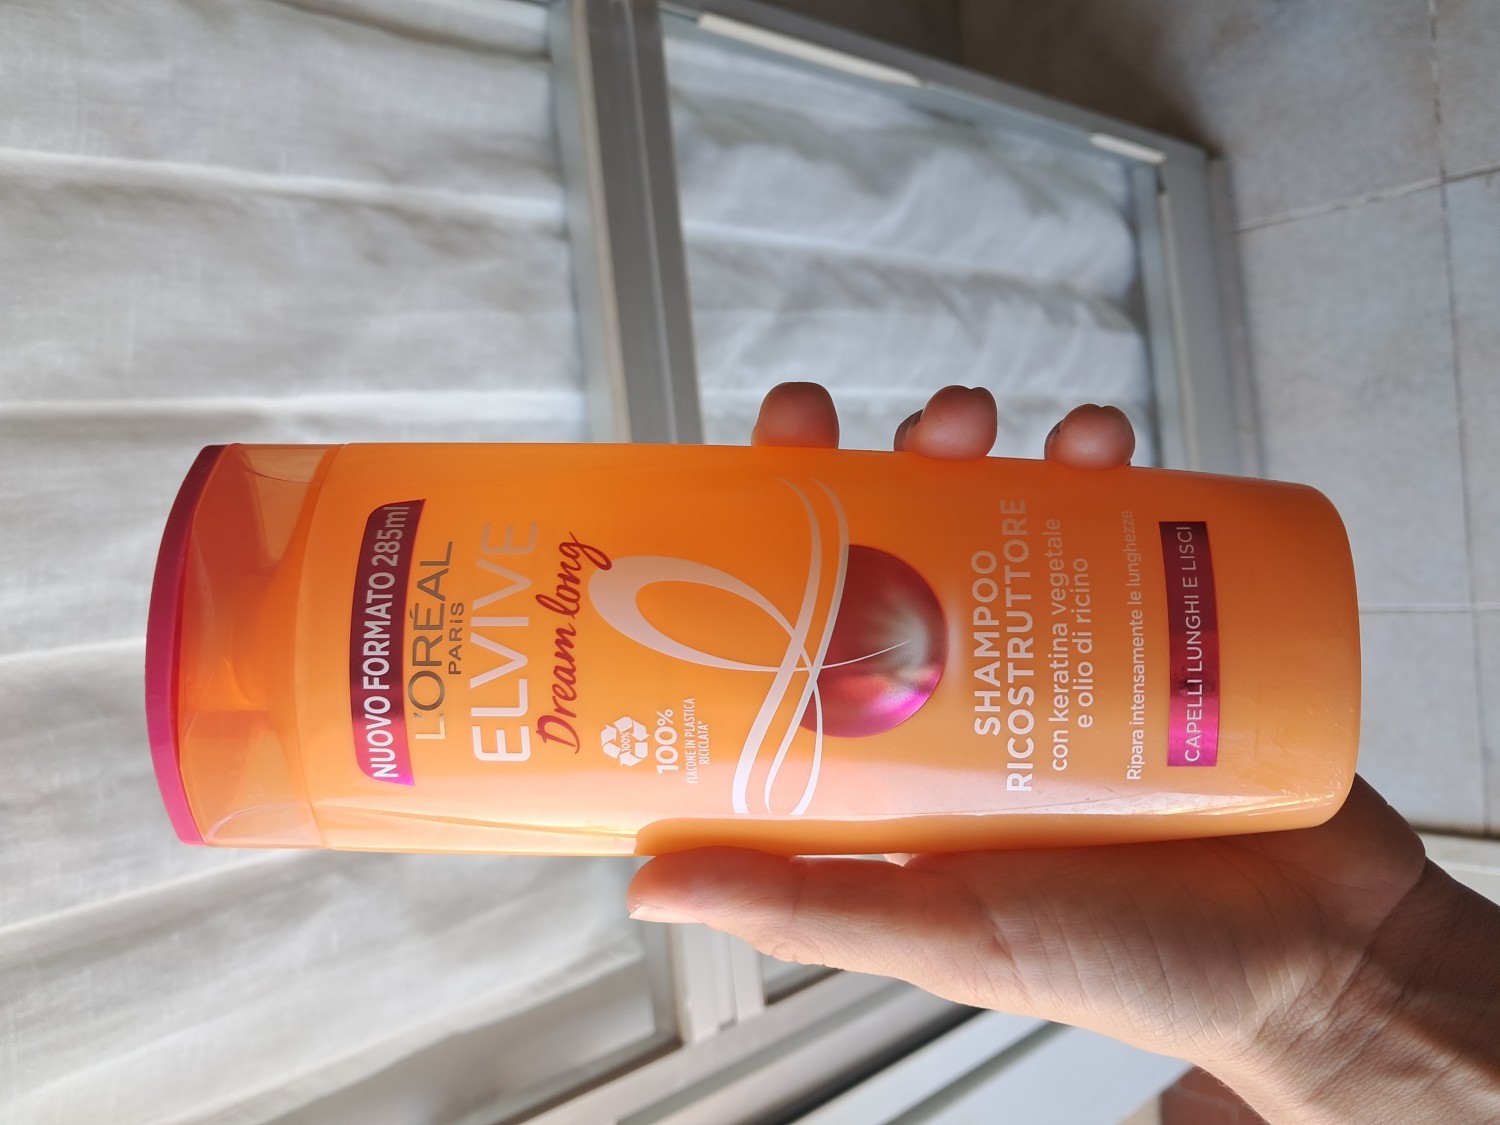 L'Oréal Paris Shampoo Elvive Dream Long, Per Capelli Lisci, 285 ml